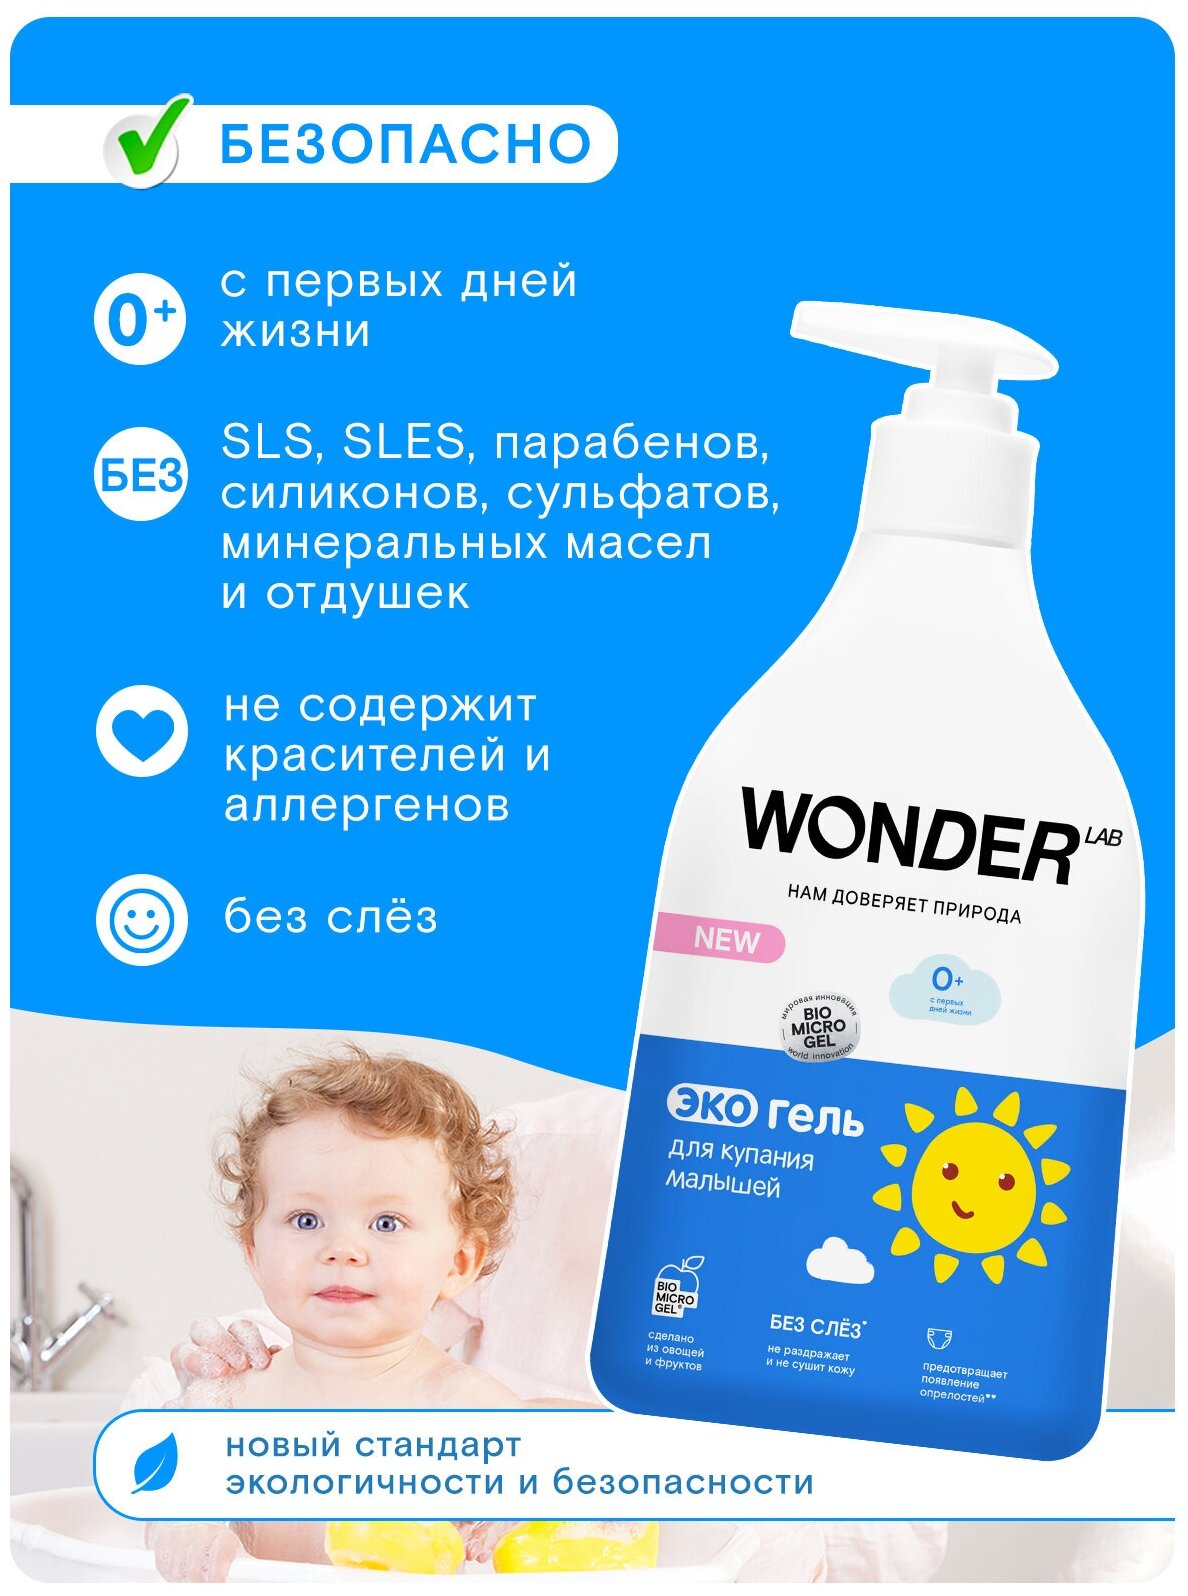 Экогель Wonder Lab для купания малышей 0.54л ООО БМГ - фото №9